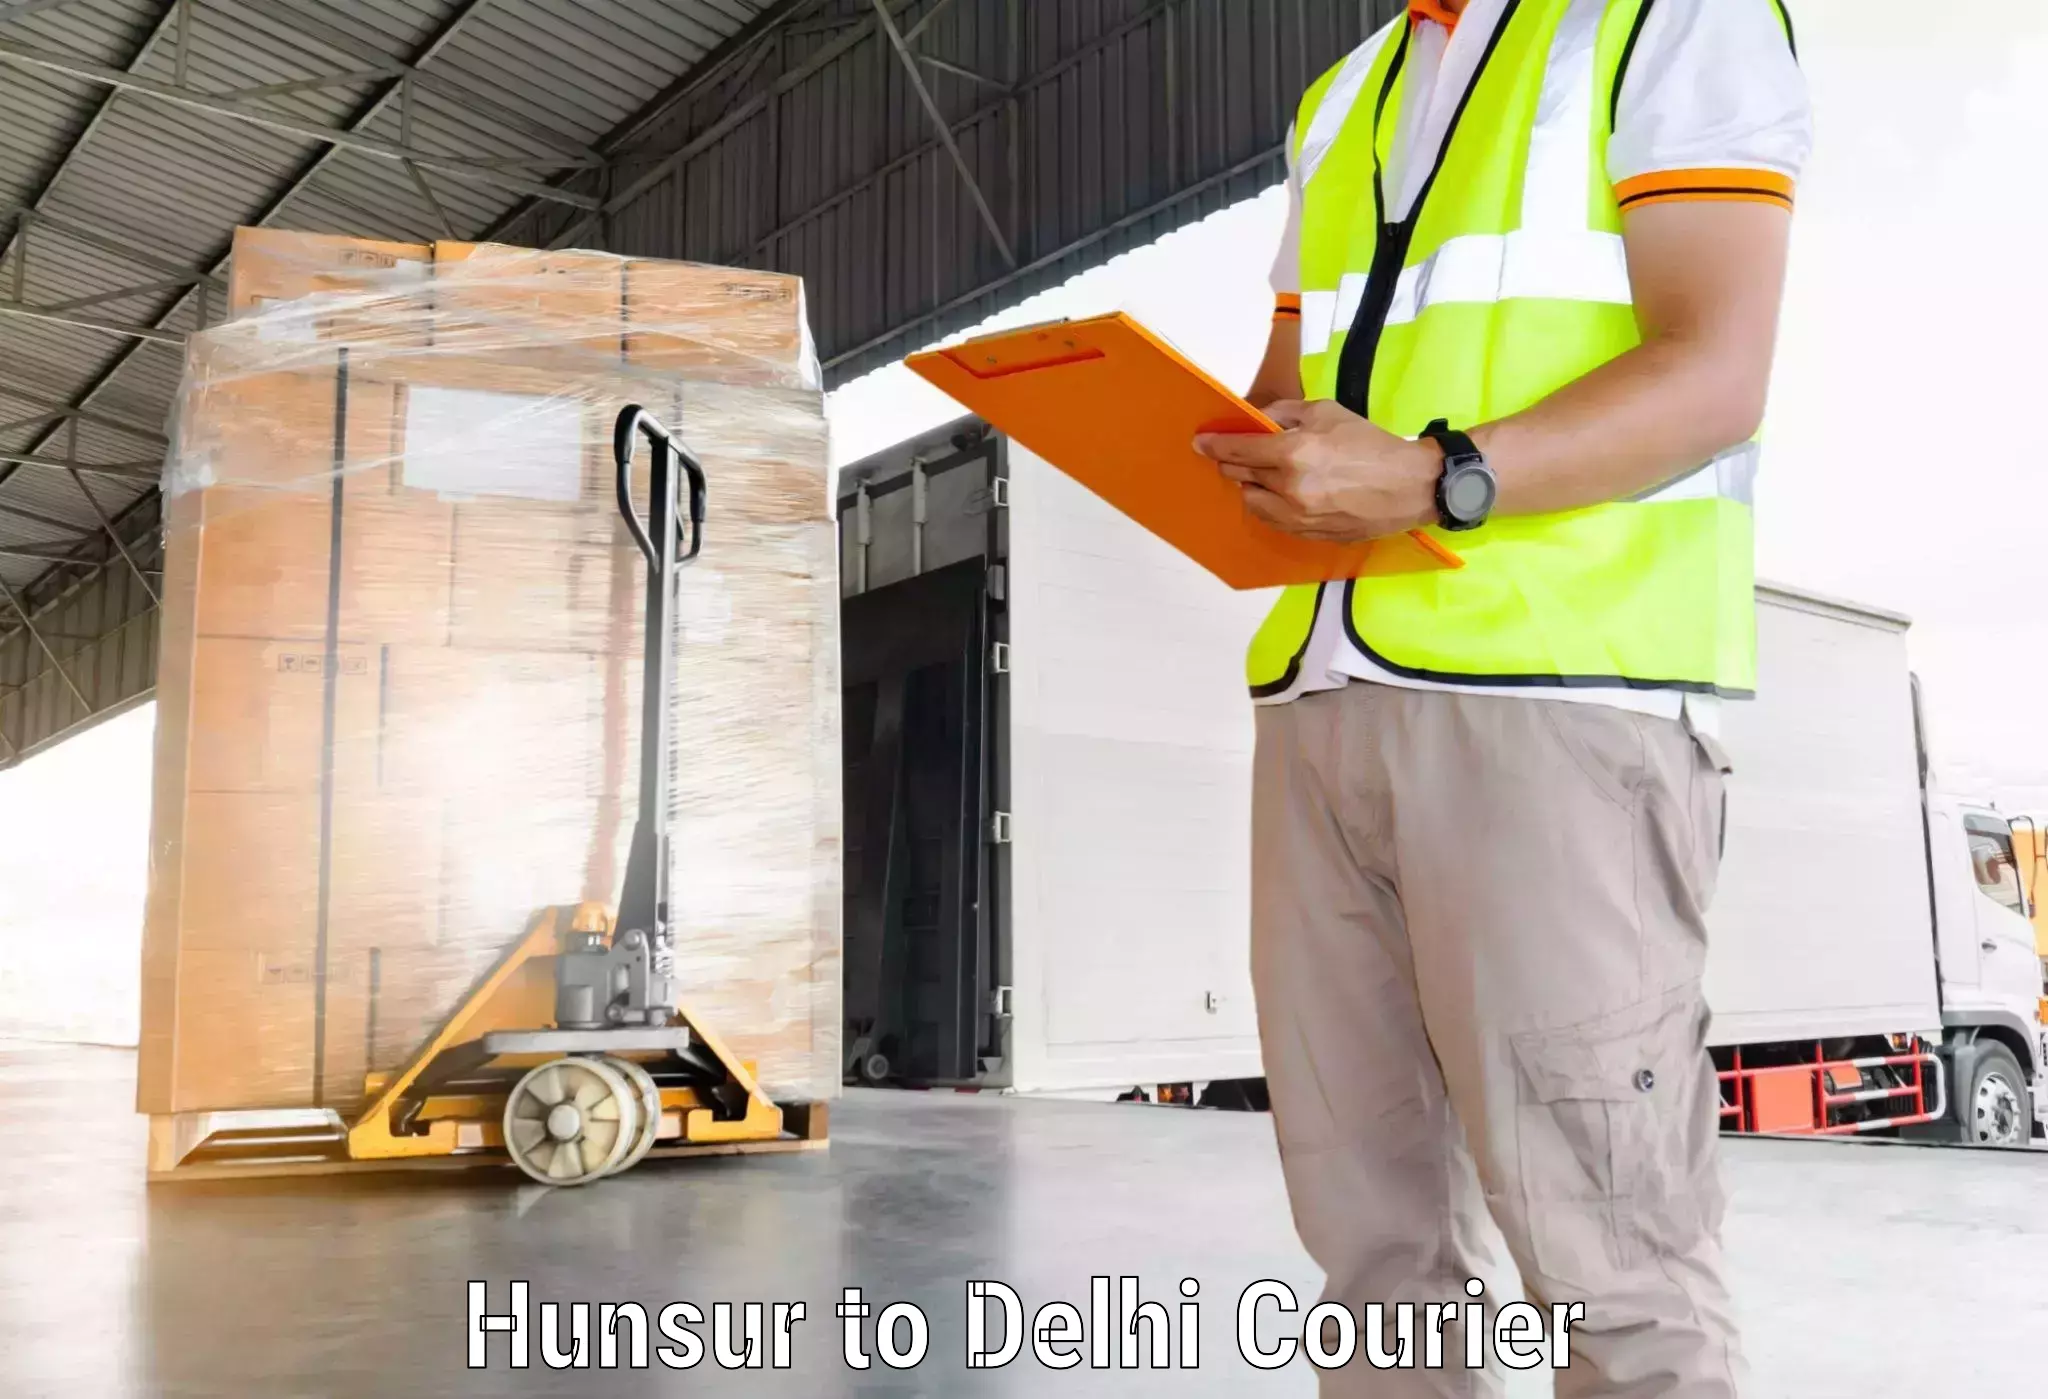 Advanced courier platforms Hunsur to University of Delhi